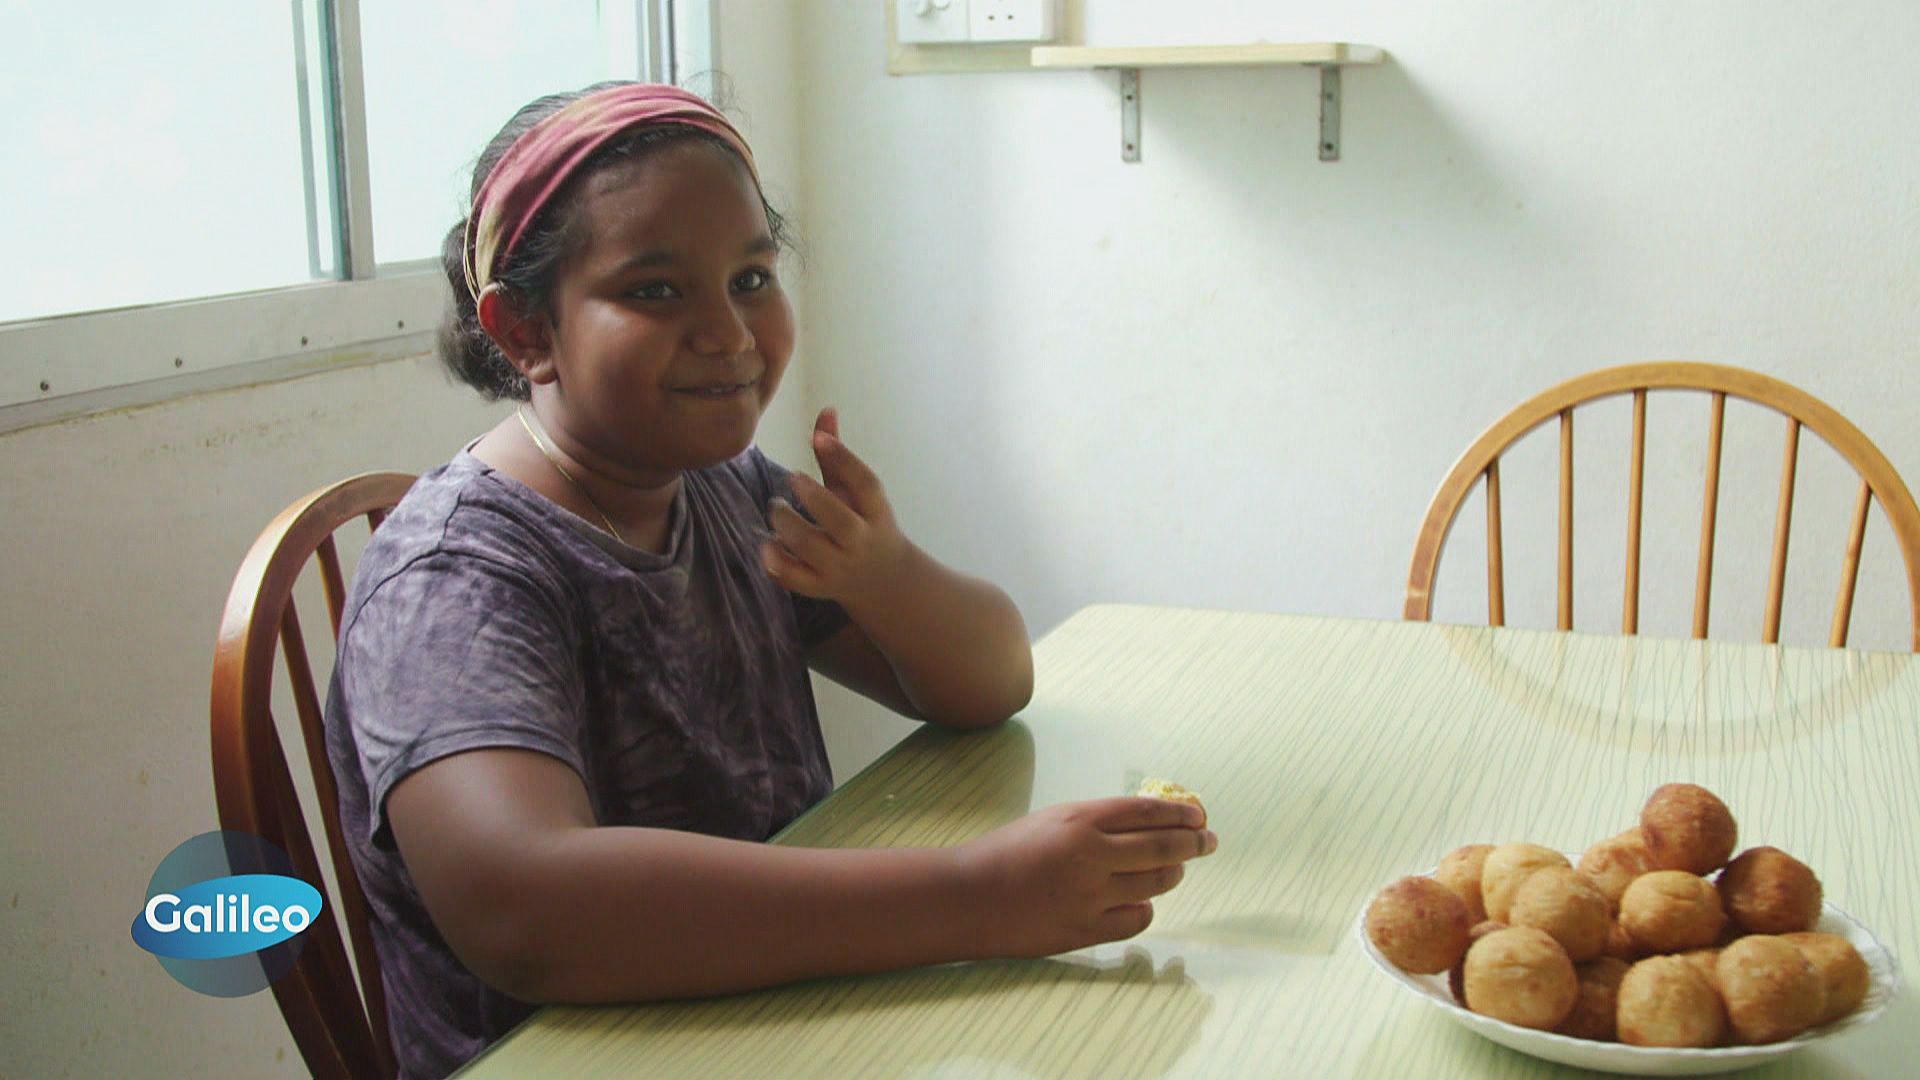 Thunfisch, Kokosnuss, Chili: Das Kinder-Lieblings-Essen auf den Malediven